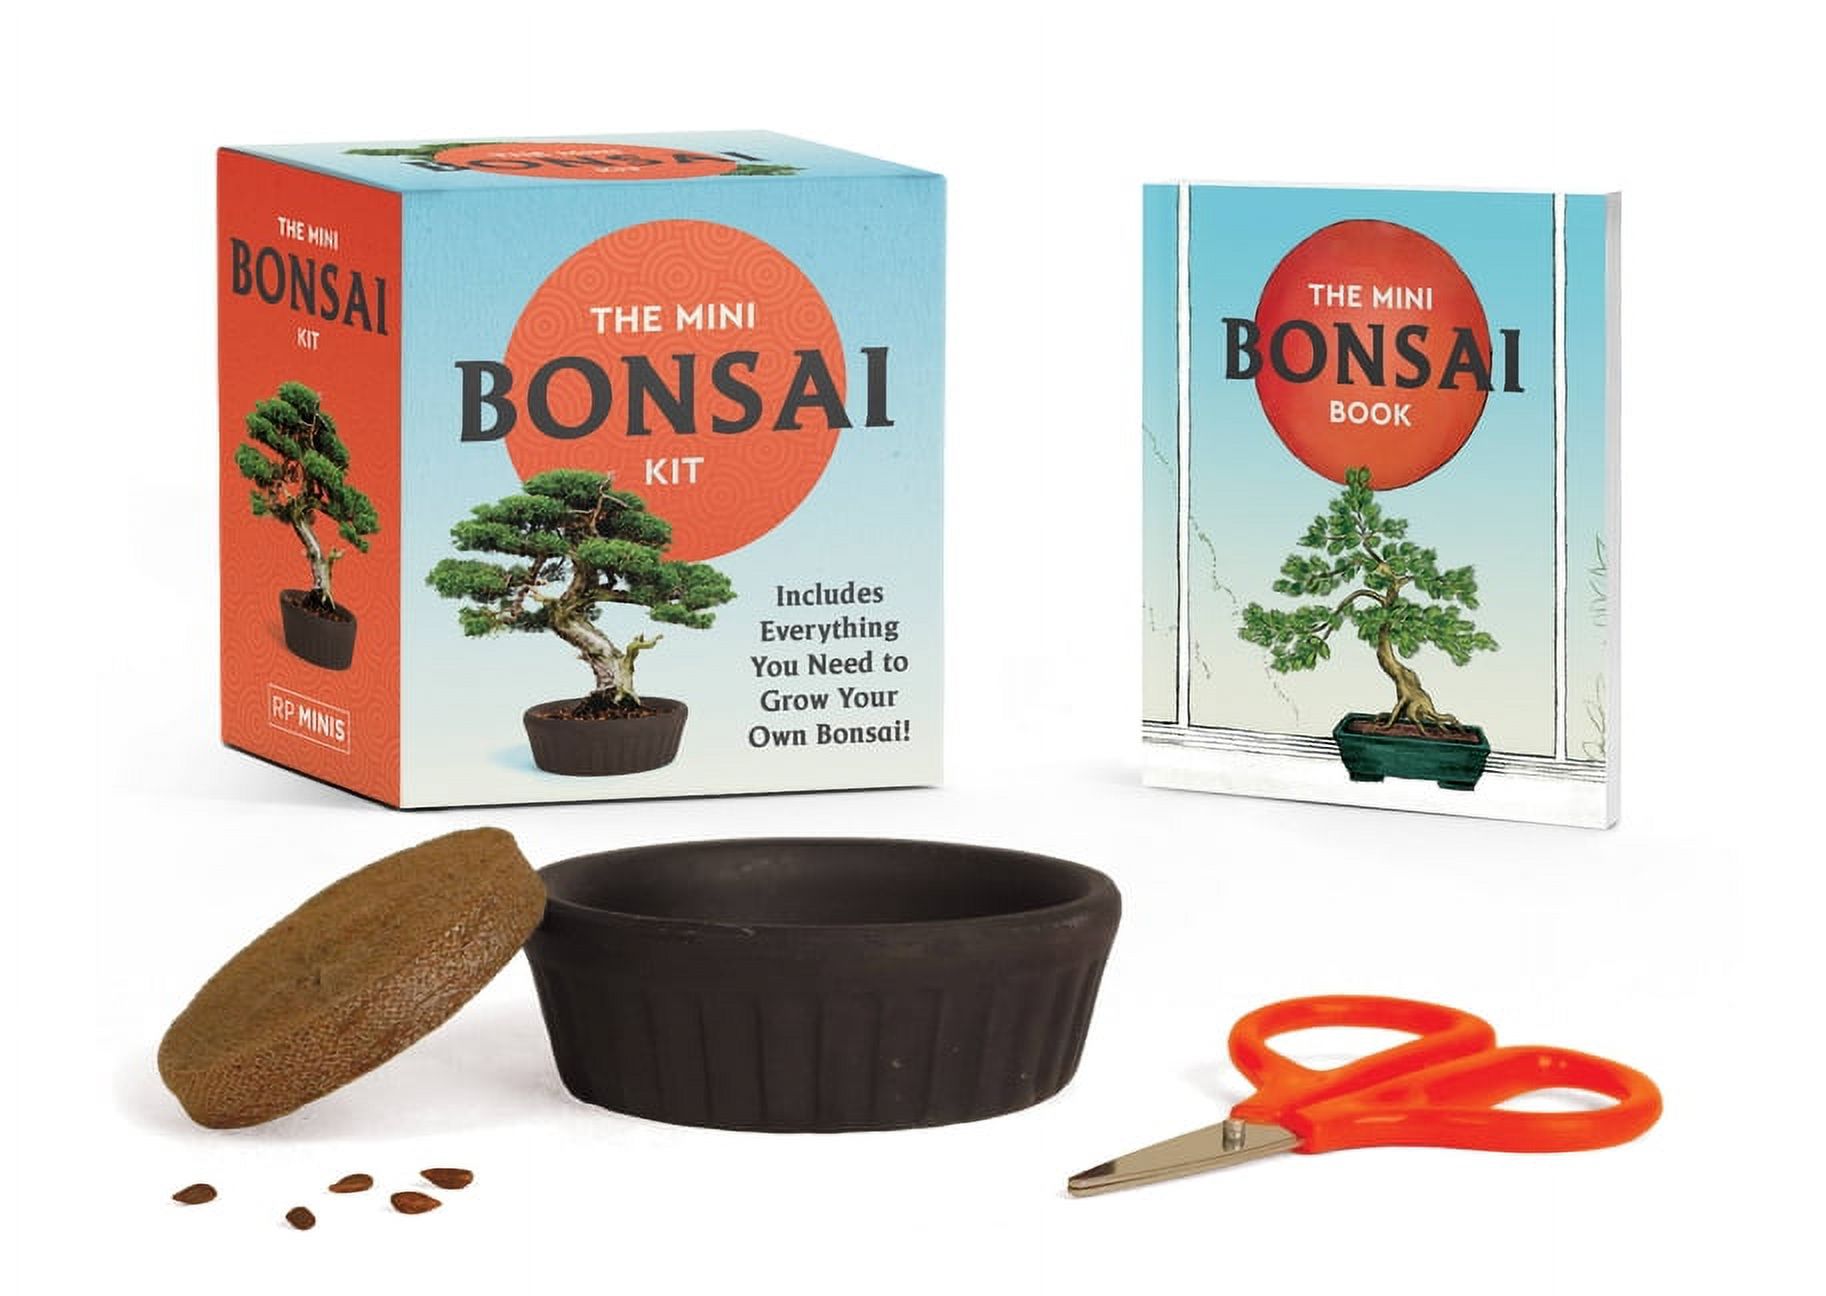 RP Minis: The Mini Bonsai Kit (Paperback) - image 1 of 1